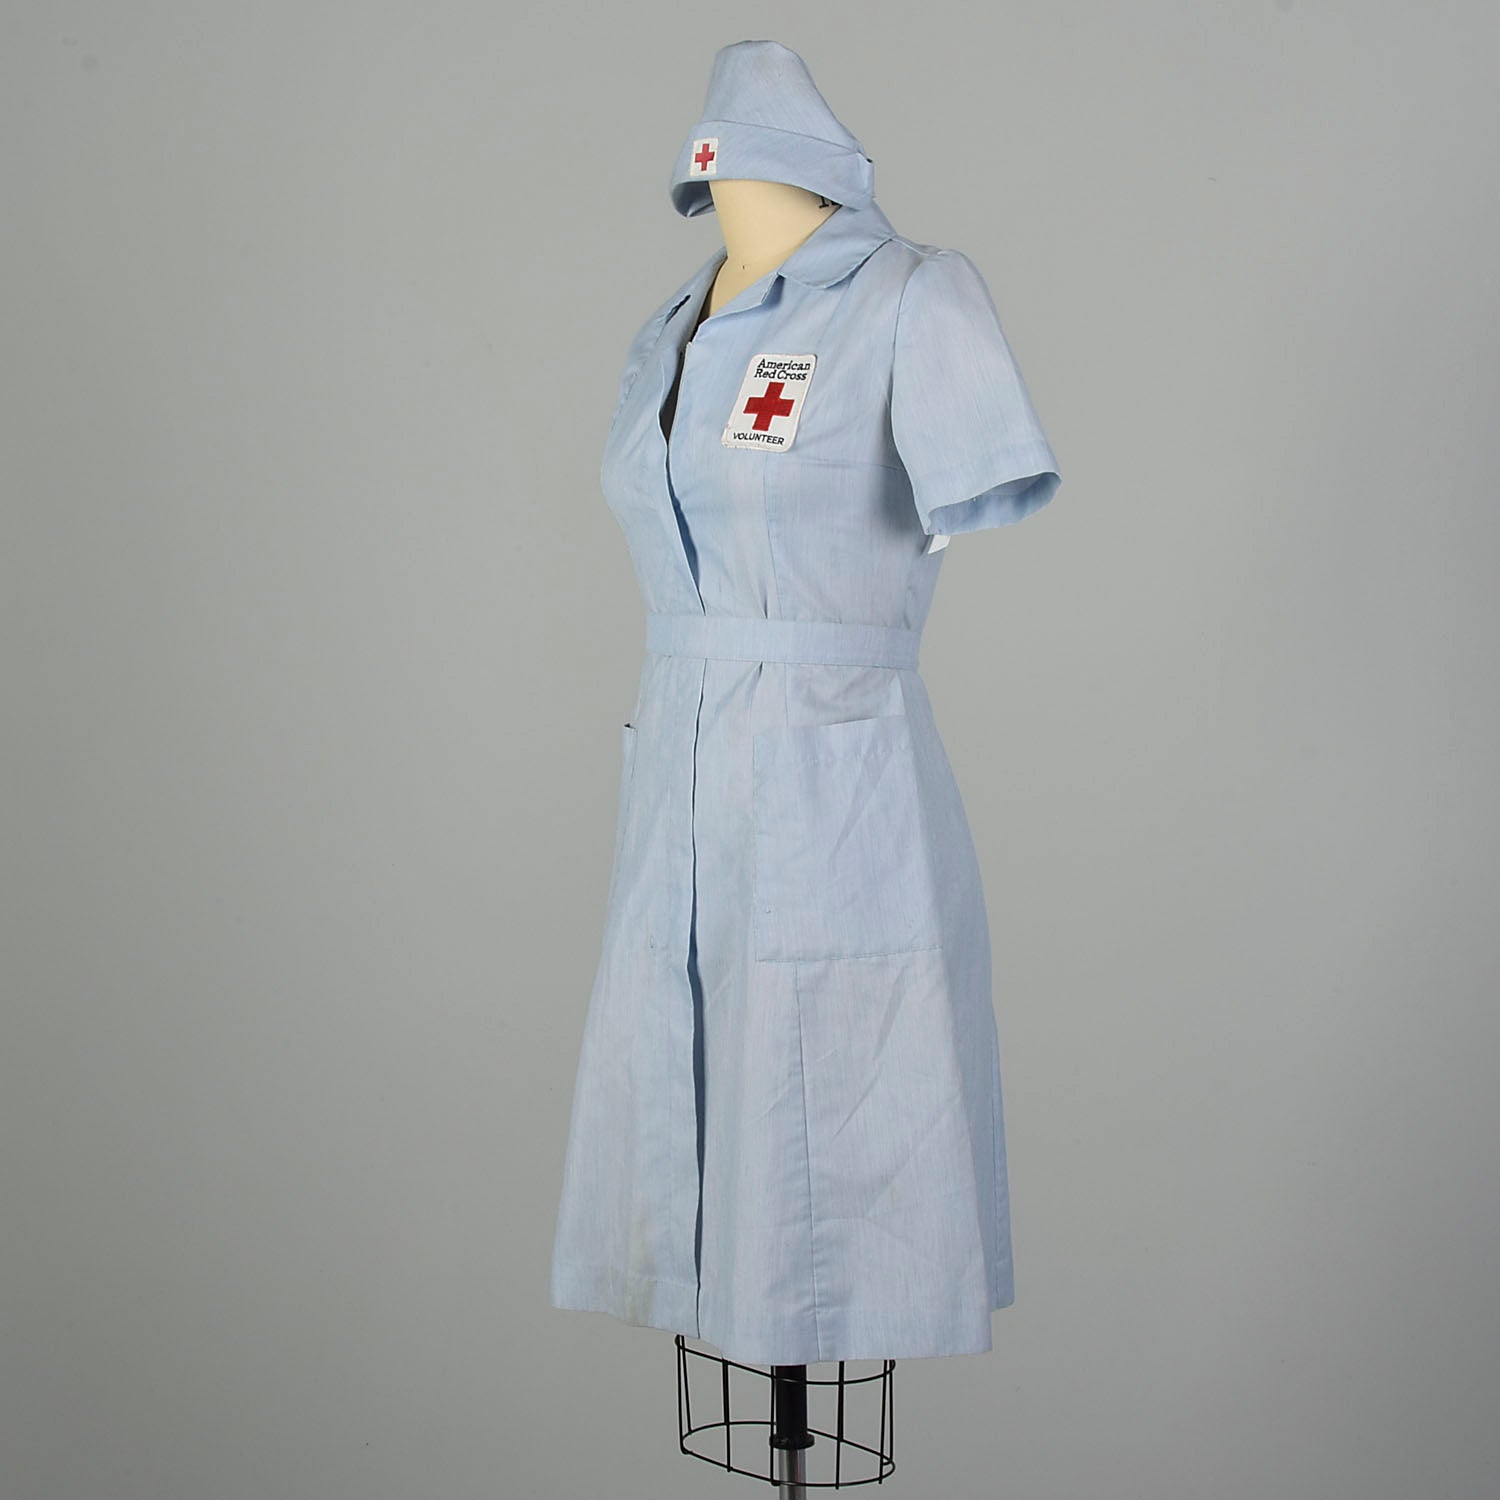 Medium 1980s Dress Red Cross Volunteer Uniform Military Short Sleeve